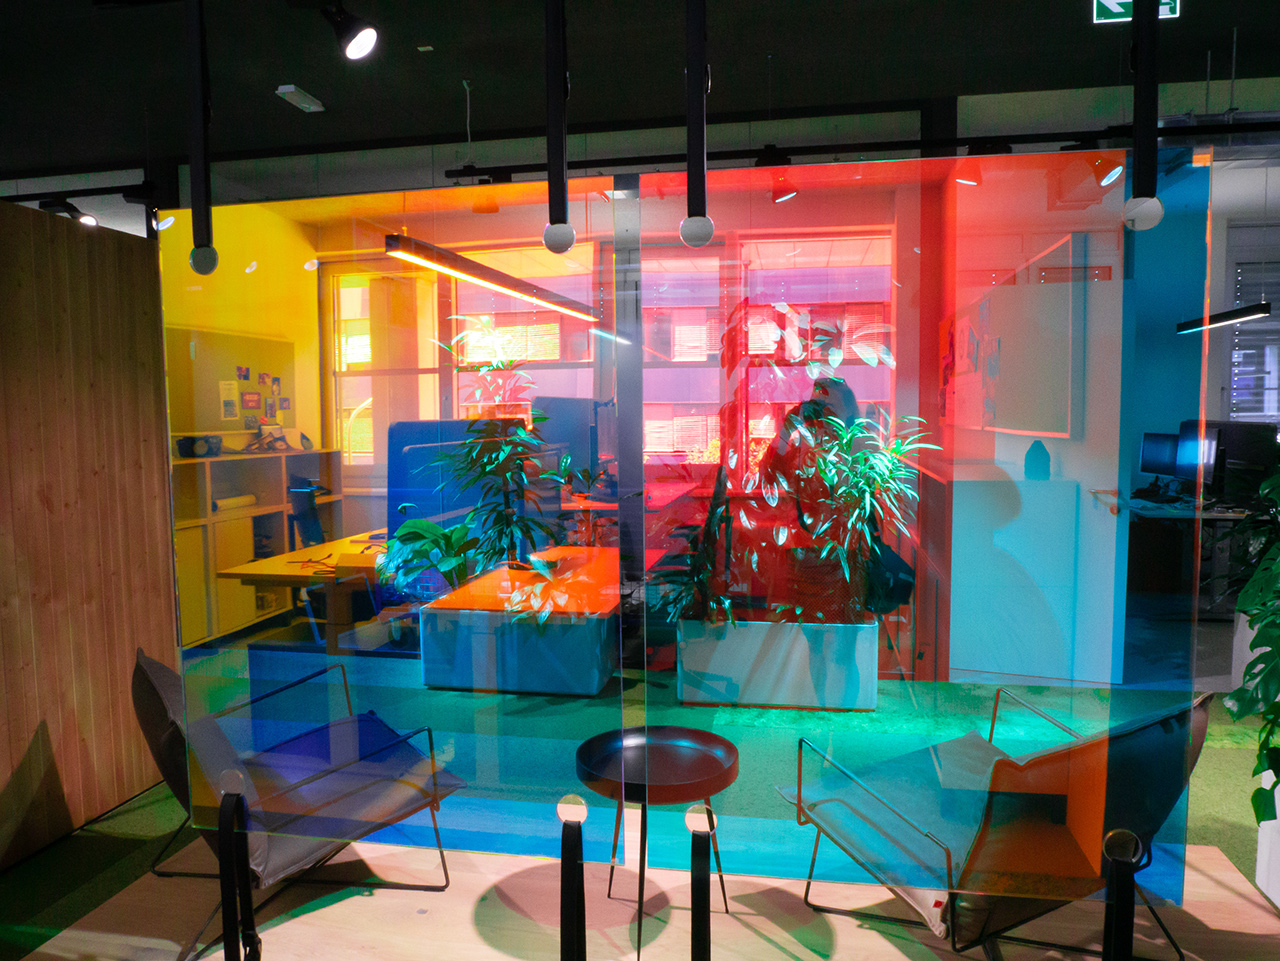 Futuristisch glänzende Glasscheiben als Raumteiler